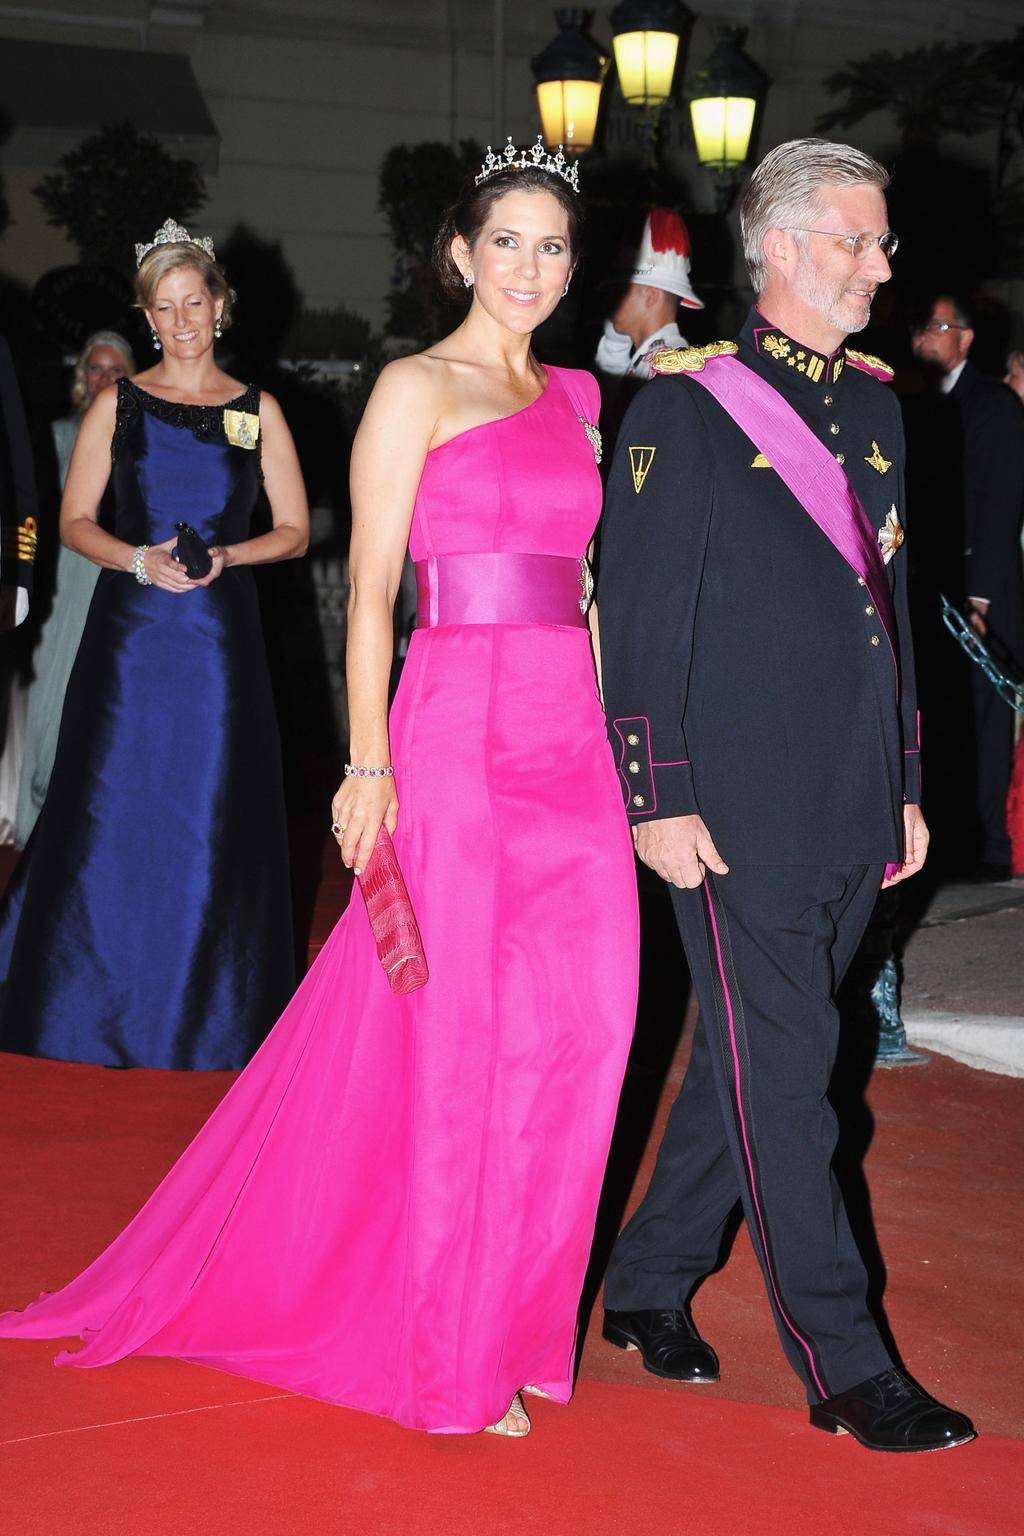 Maria, księżna koronna Danii, i książę belgijski Philippe, podczas kolacji na tarasach opery po ceremonii ślubnej księcia Monako Alberta II i księżnej Monako Charlene, 2 lipca 2011 roku.